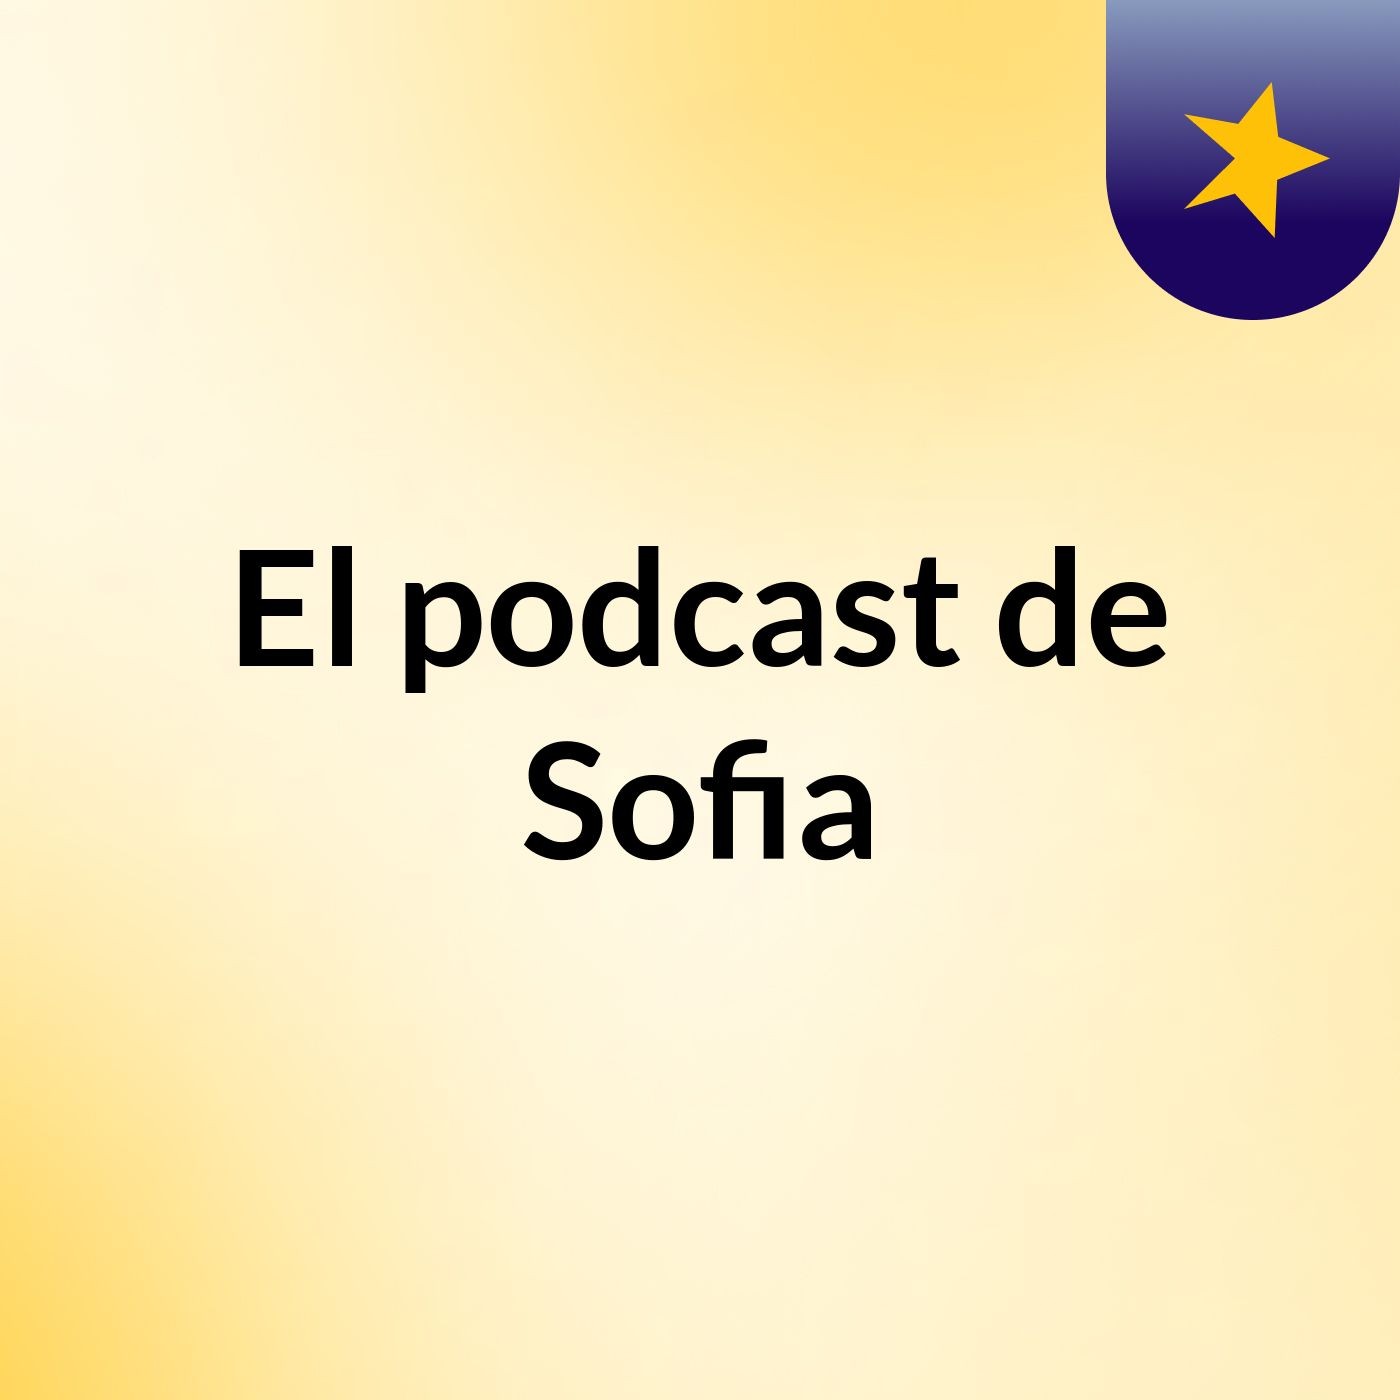 El podcast de Sofia